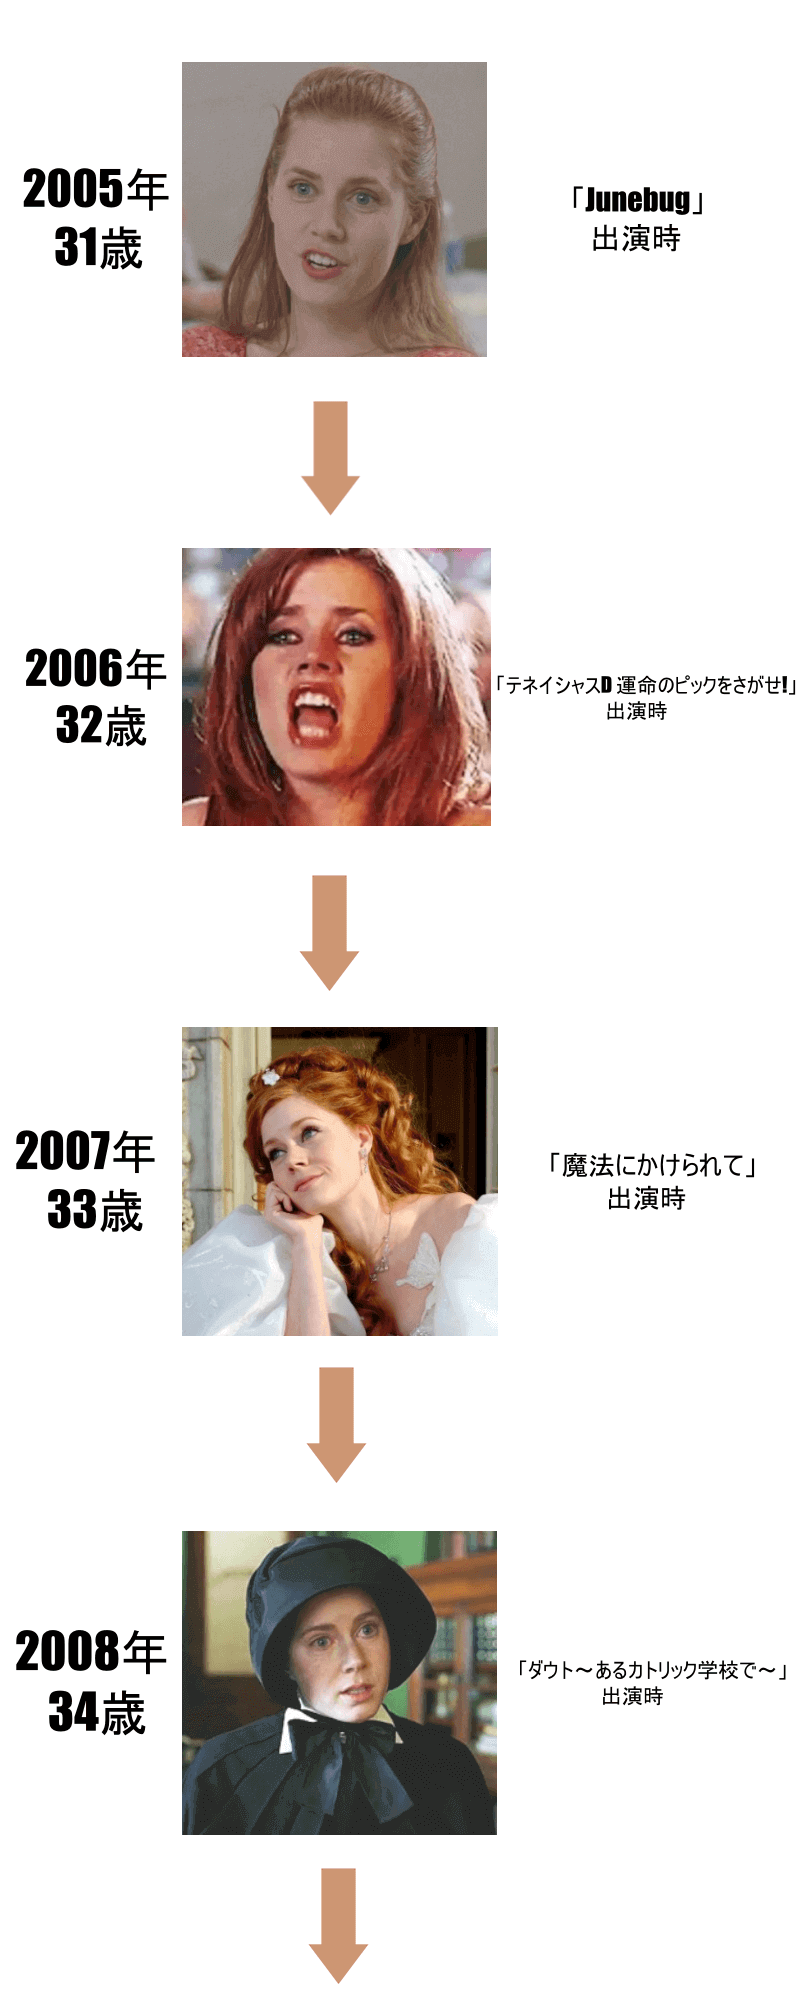 エイミーアダムスの画像年表2005年から2008年まで